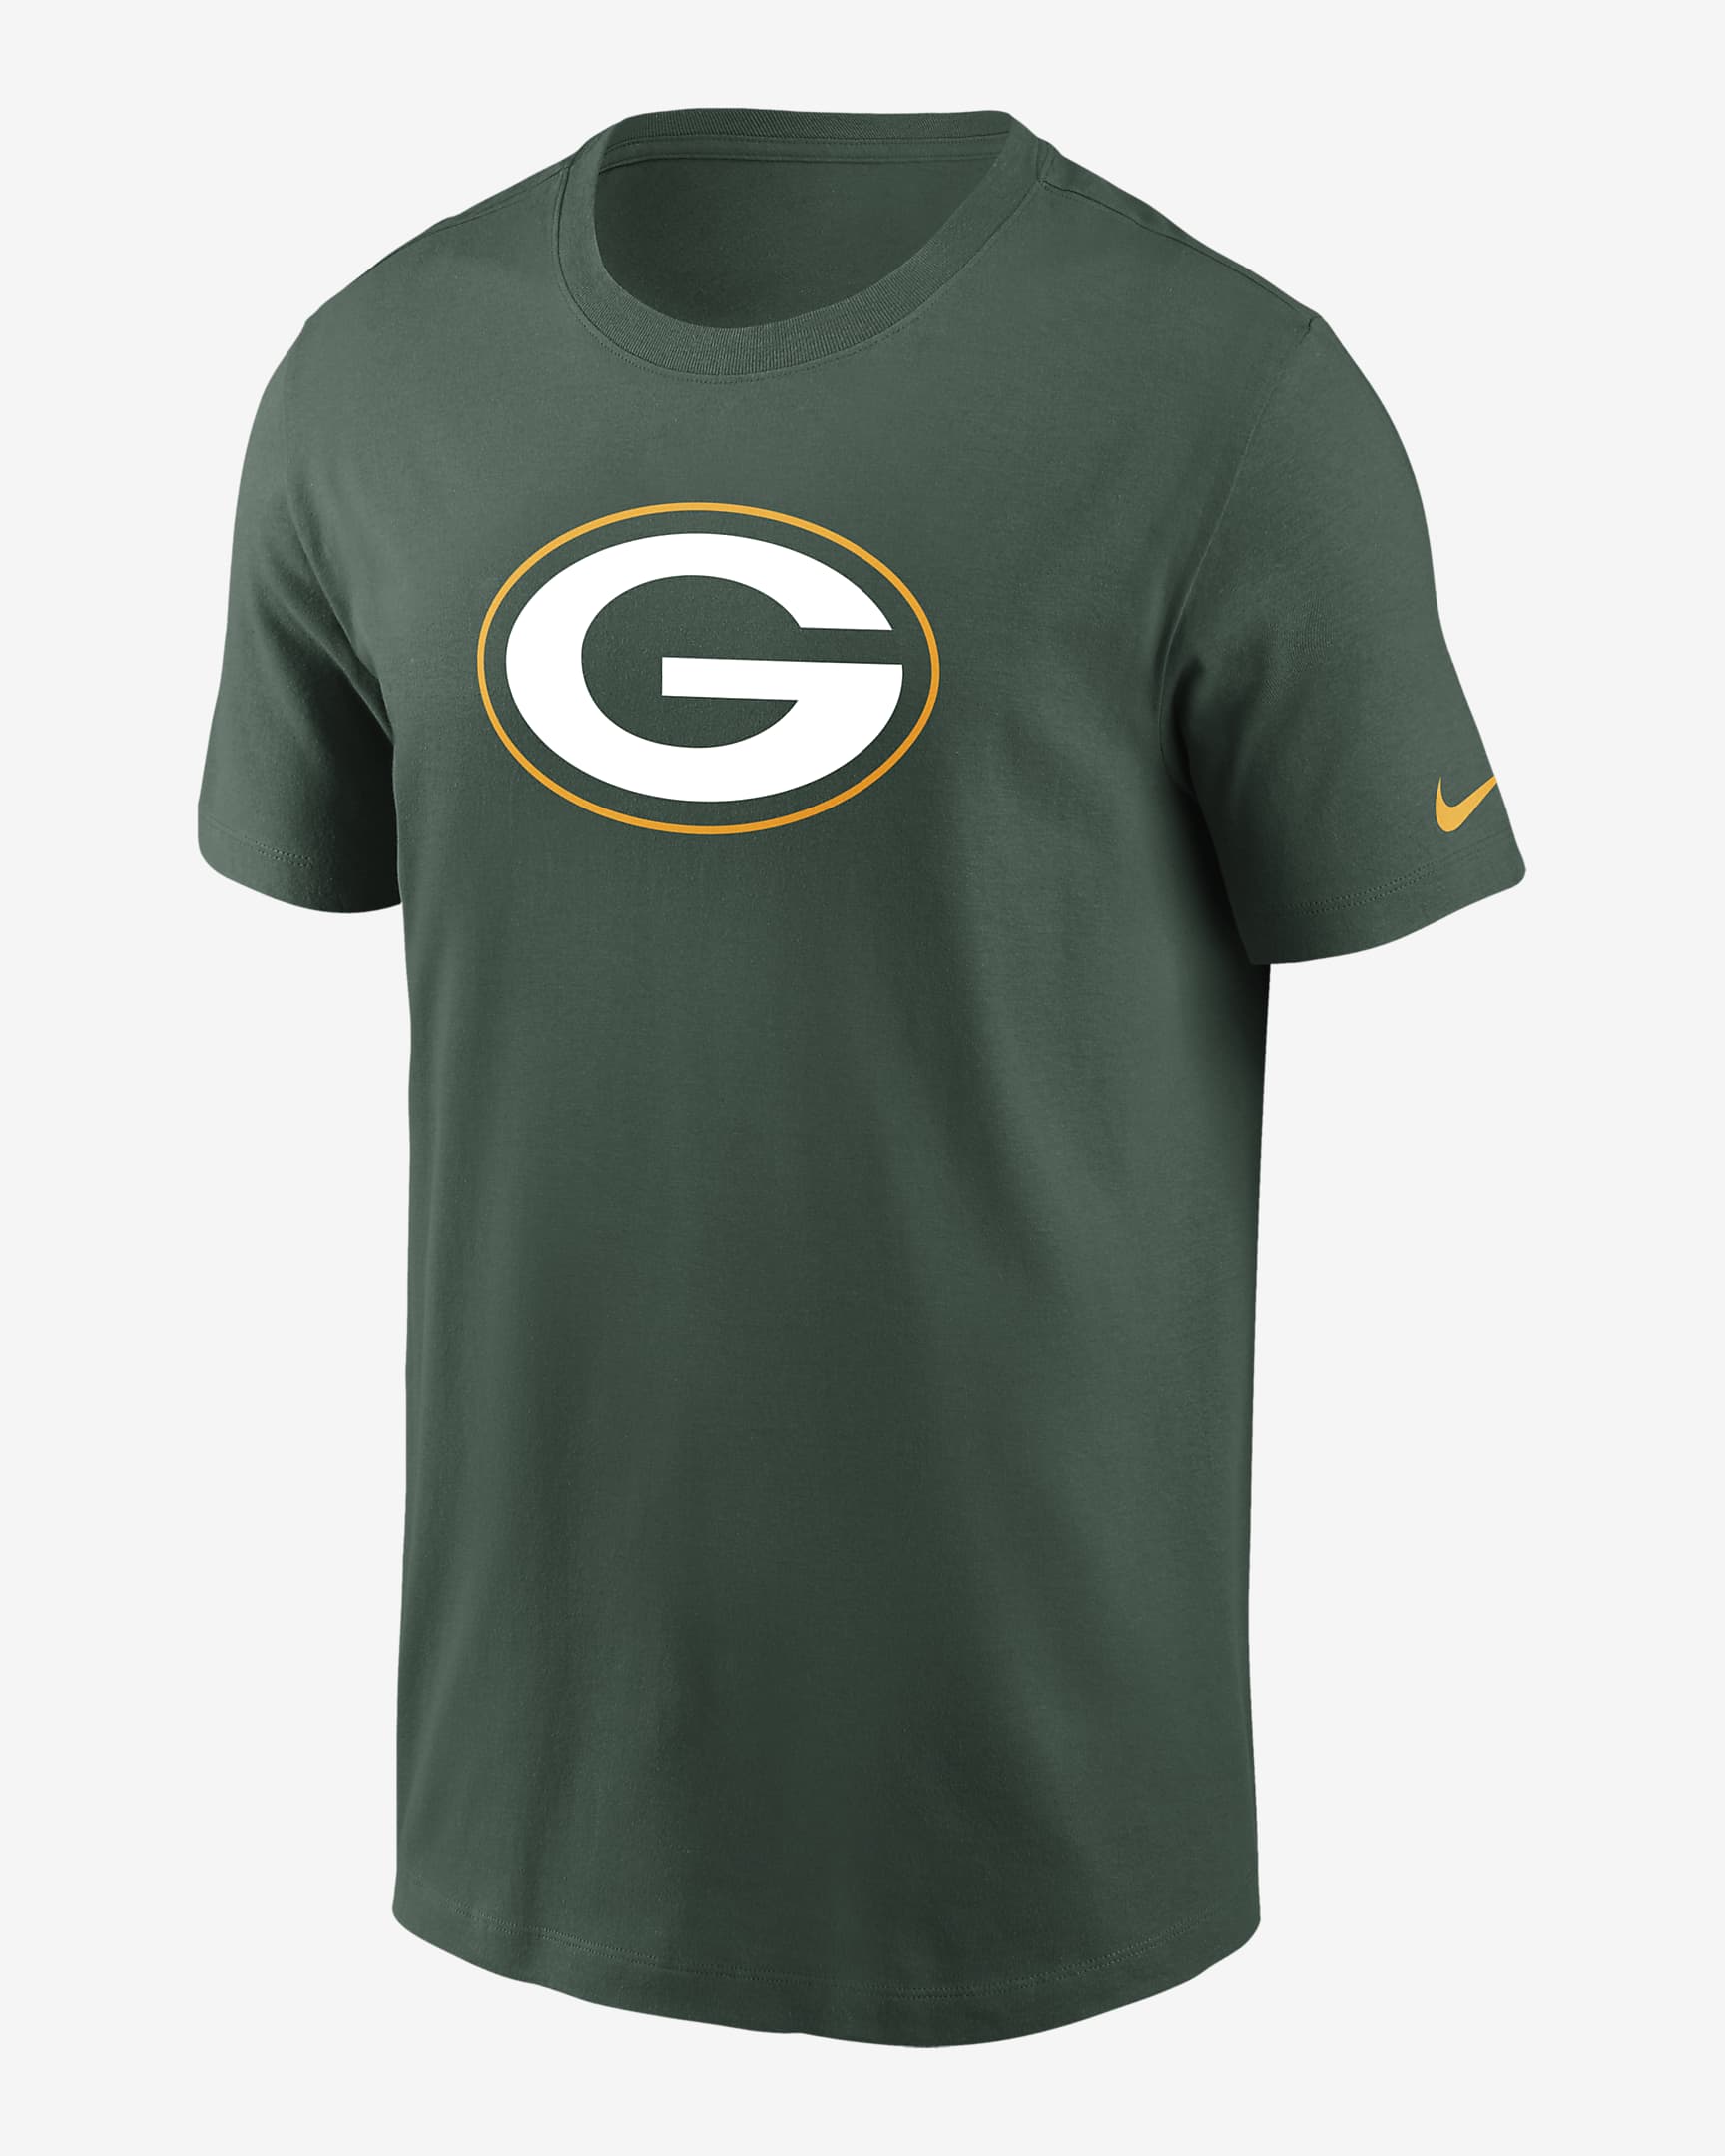 Playera para hombre Nike Logo Essential (NFL Green Bay Packers). Nike.com